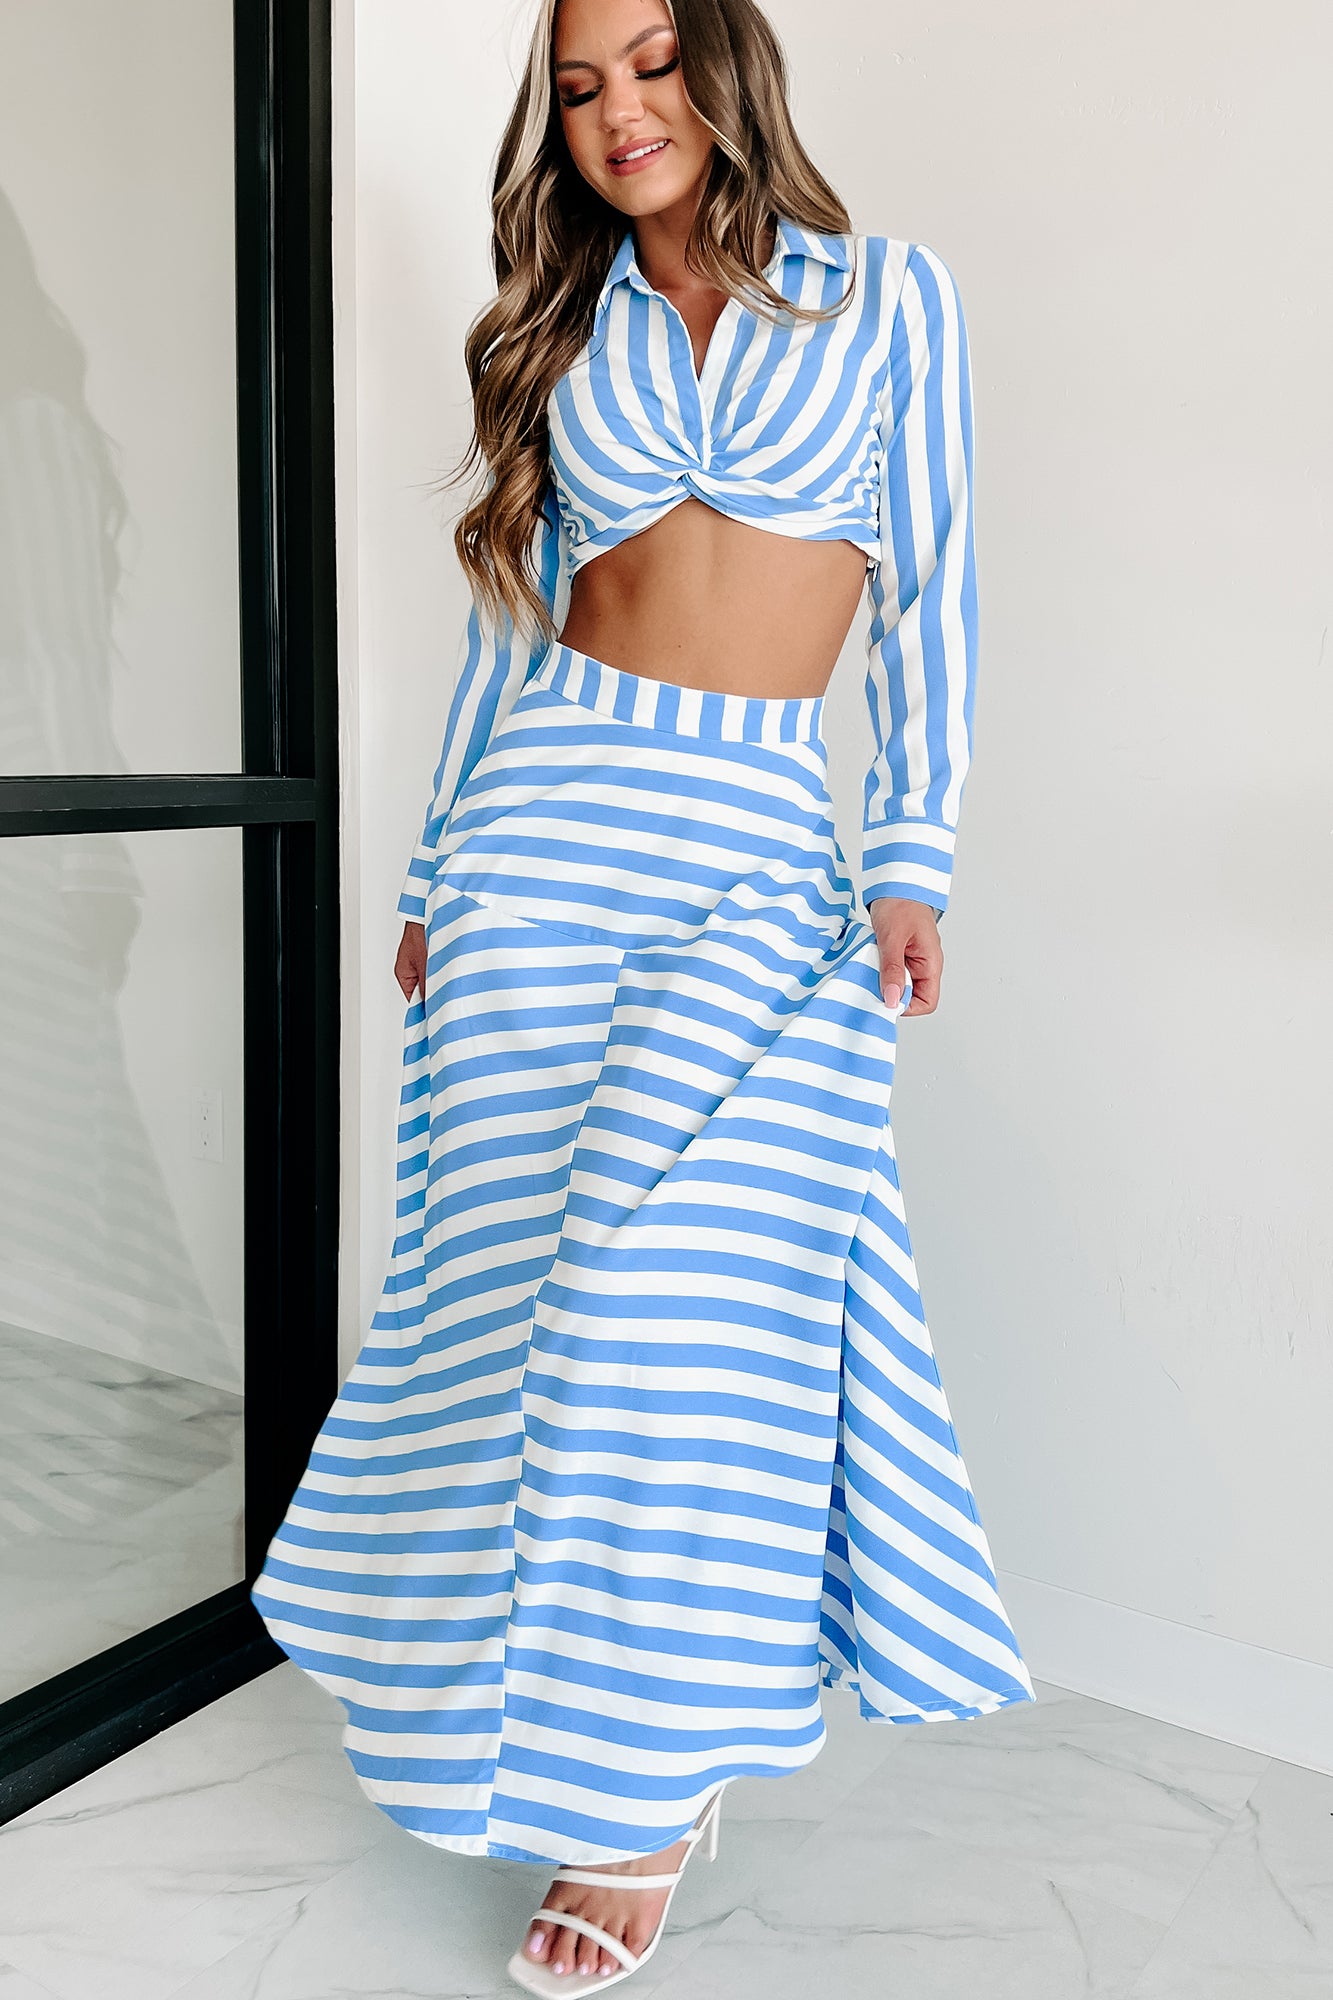 Travel Far Away Striped Two Piece Skirt Set (White/Blue) - NanaMacs